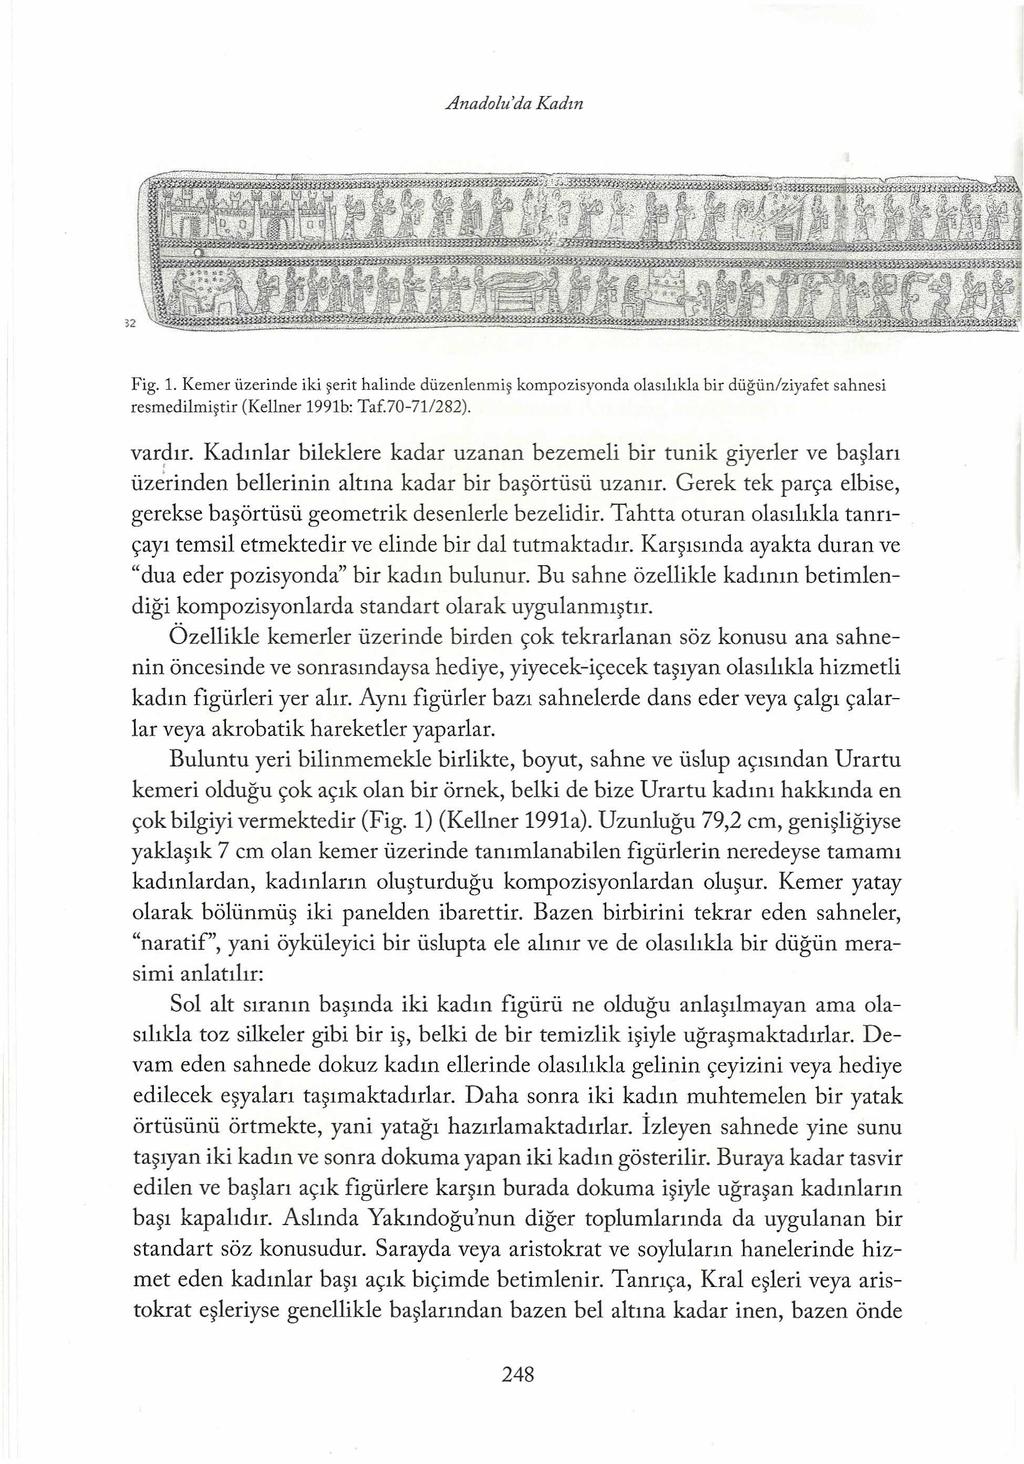 Anadolu'da Kadın Fig. 1. Kemer üzerinde iki şerit halinde düzenlenmiş kompozisyonda olasılıkla bir düğünlziyafet sahnesi resmedilmiştir (Kellner 1991b: Taf.70-71/282). vardır.